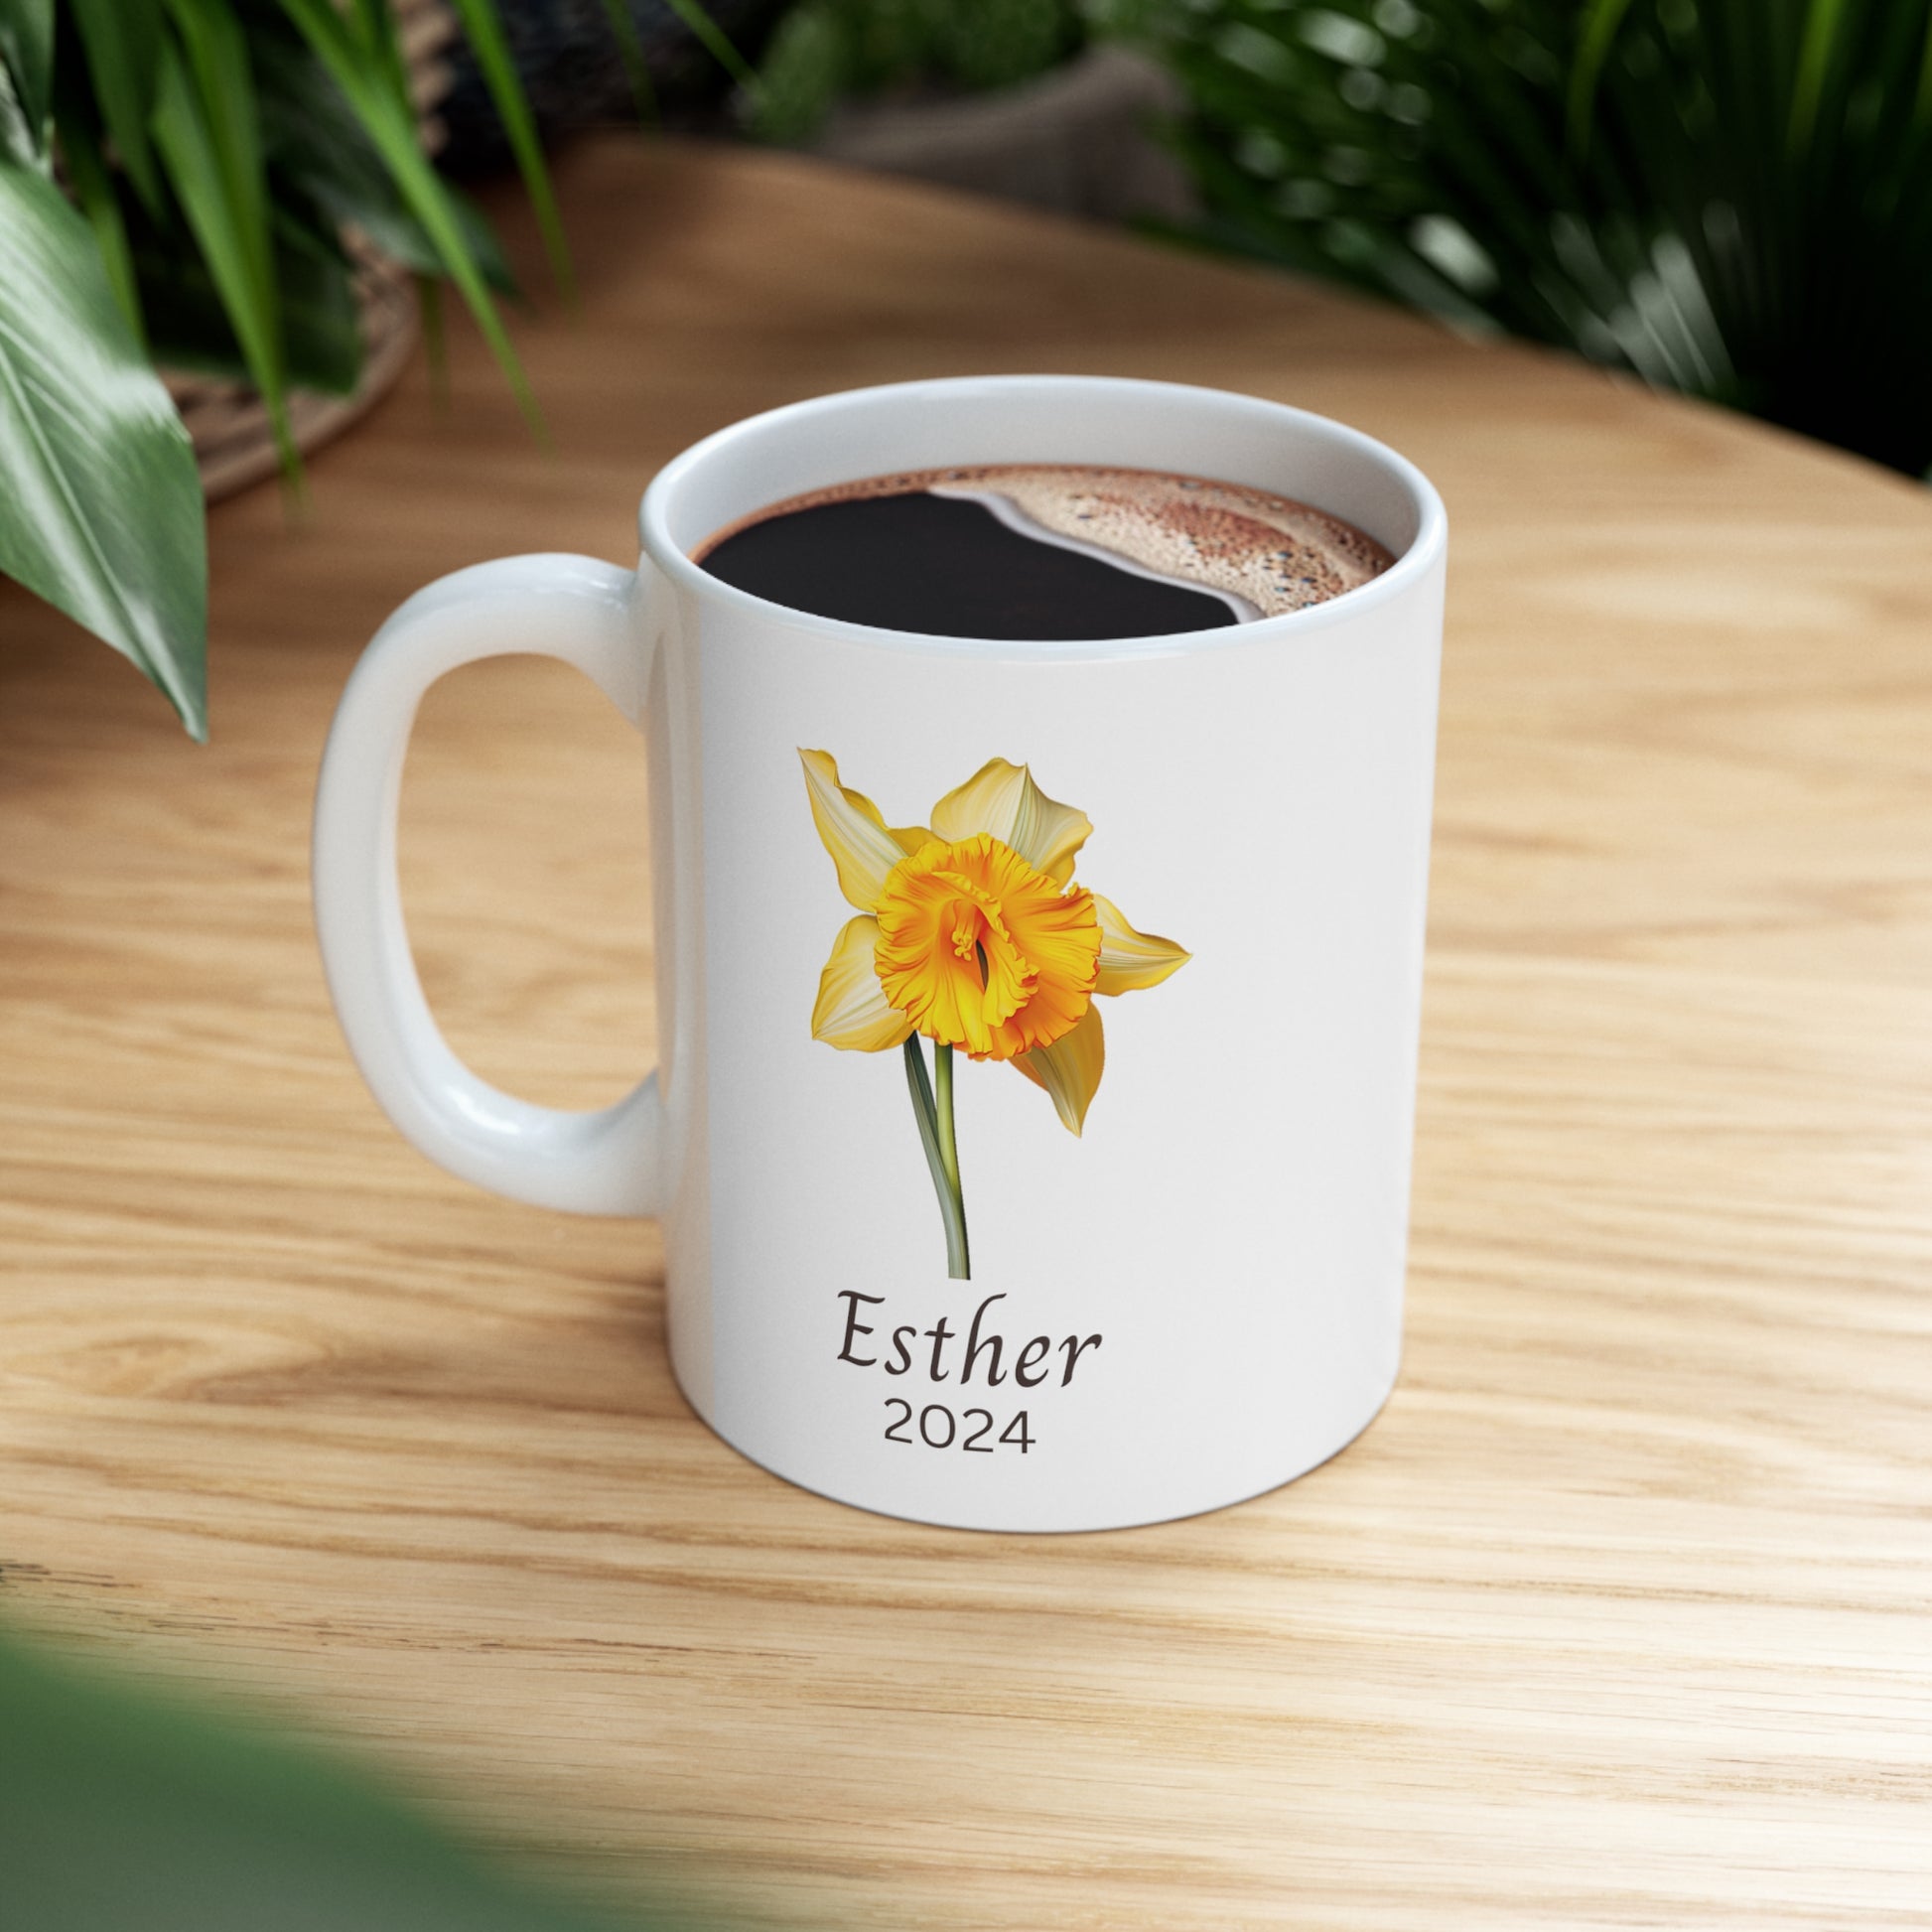 Personalized mug Birth flower March